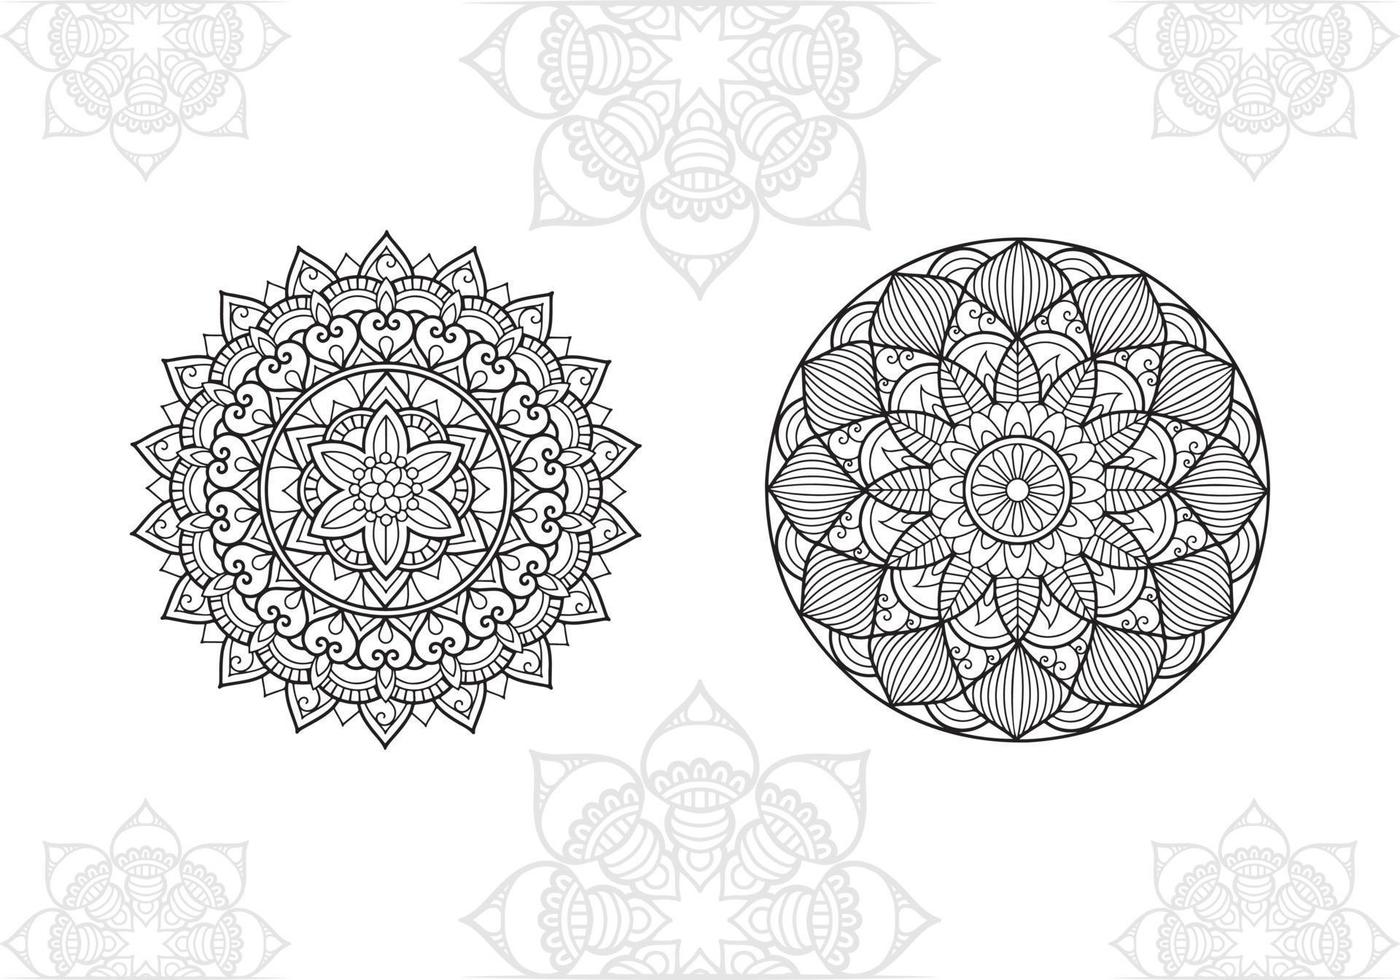 verzameling van monochroom etnisch mandala ontwerp. anti stress kleur bladzijde voor volwassenen vector